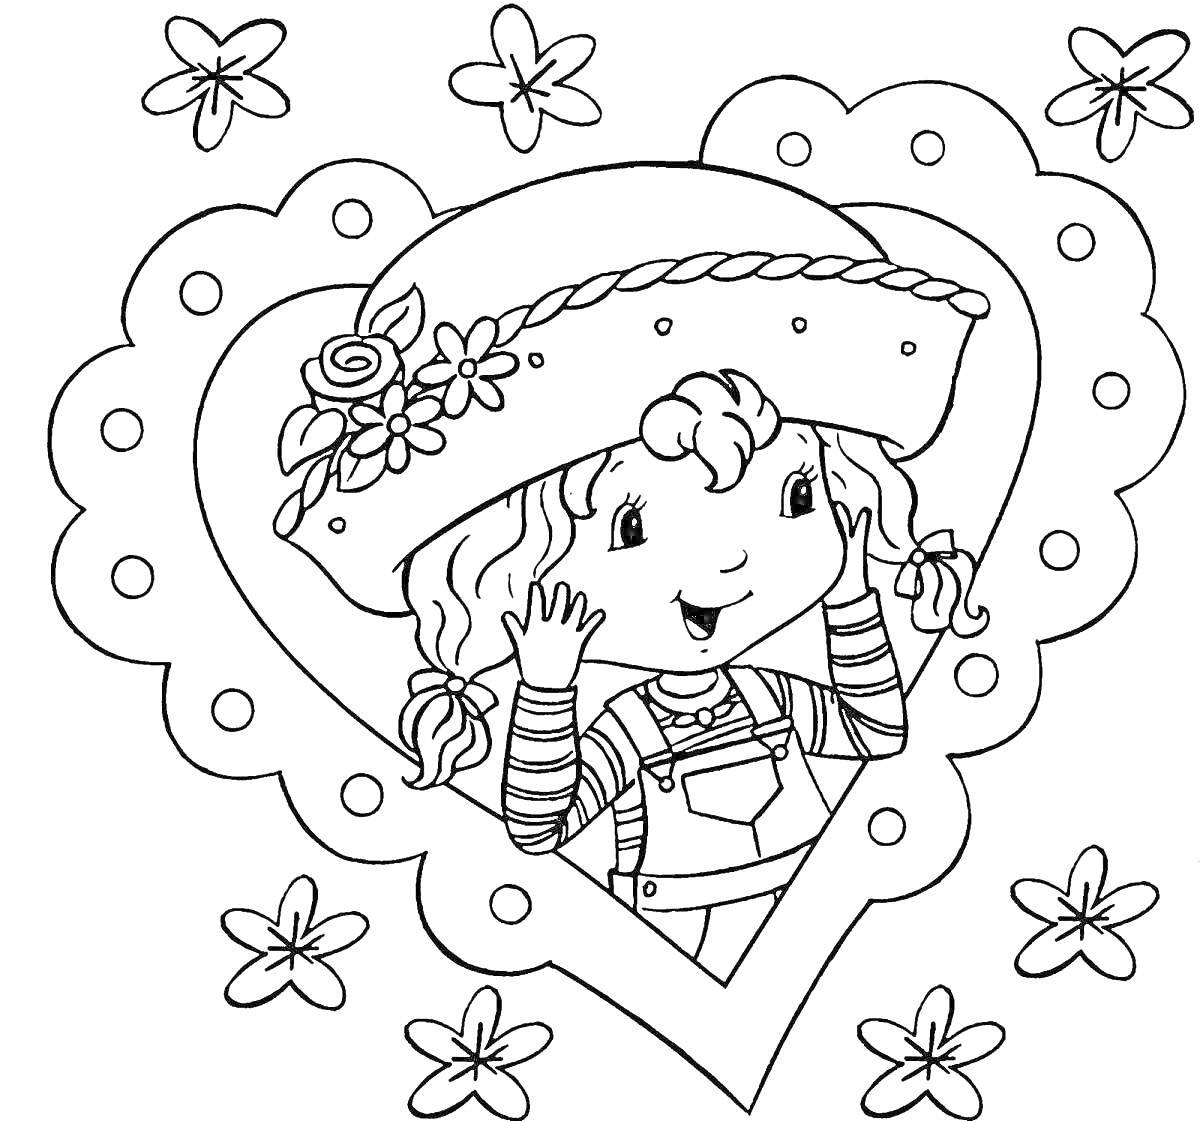 Раскраска Девочка в шляпе с цветами в сердечке, окружённая цветочками